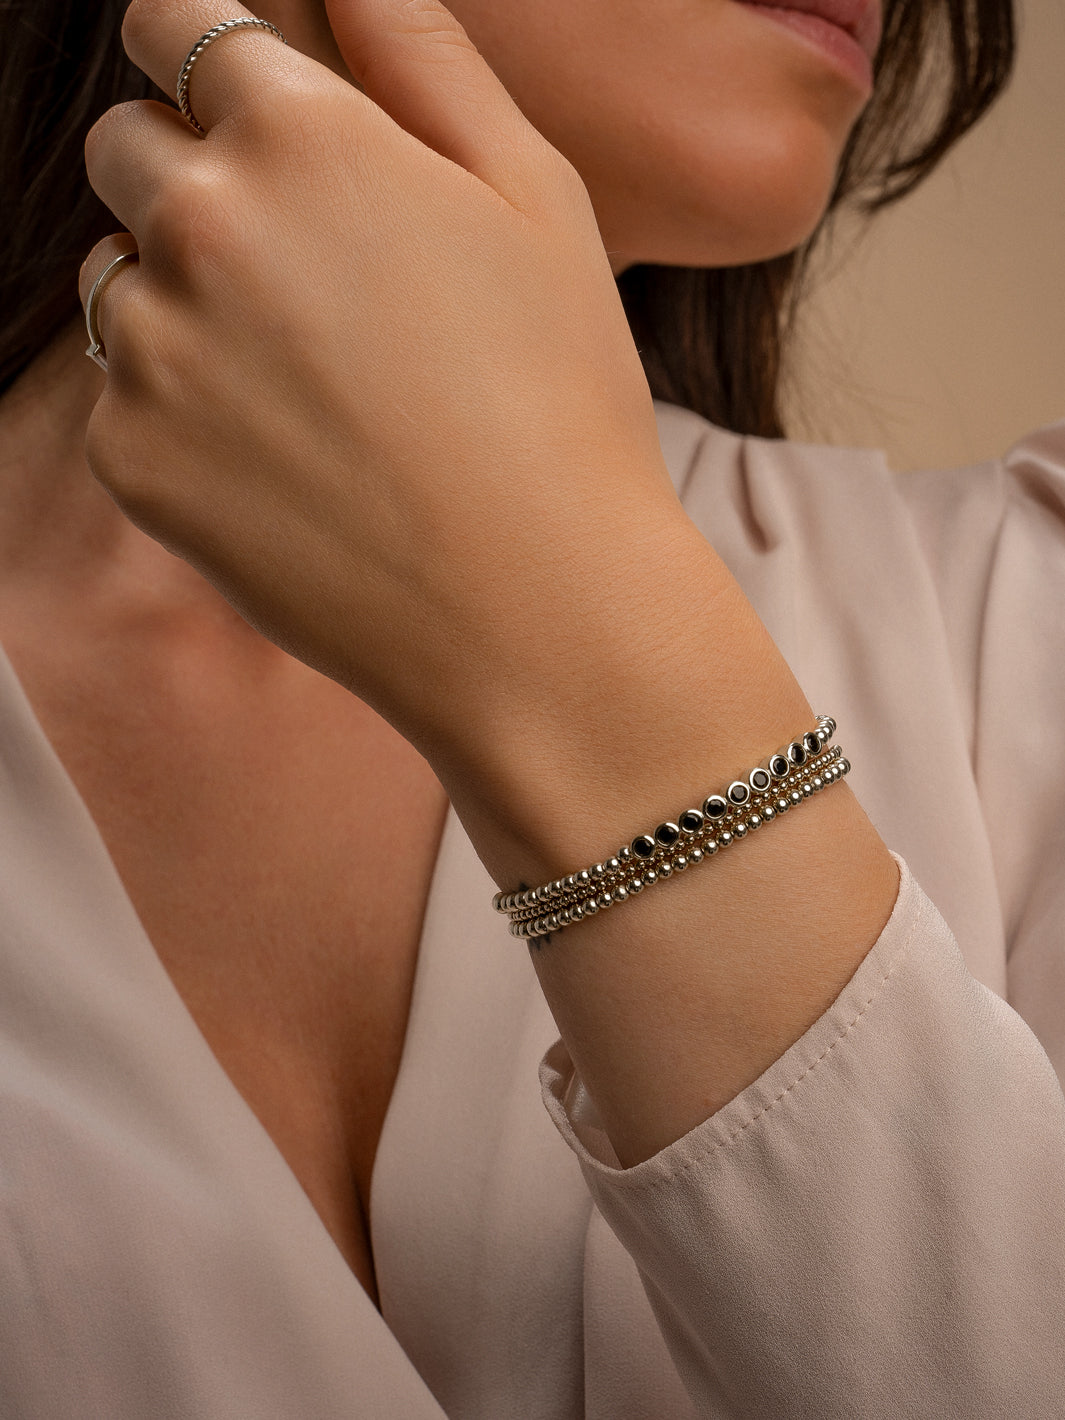 Vrouwen pols met zilveren kralen armbanden en hand met zilveren Sparkling Jewels ringen